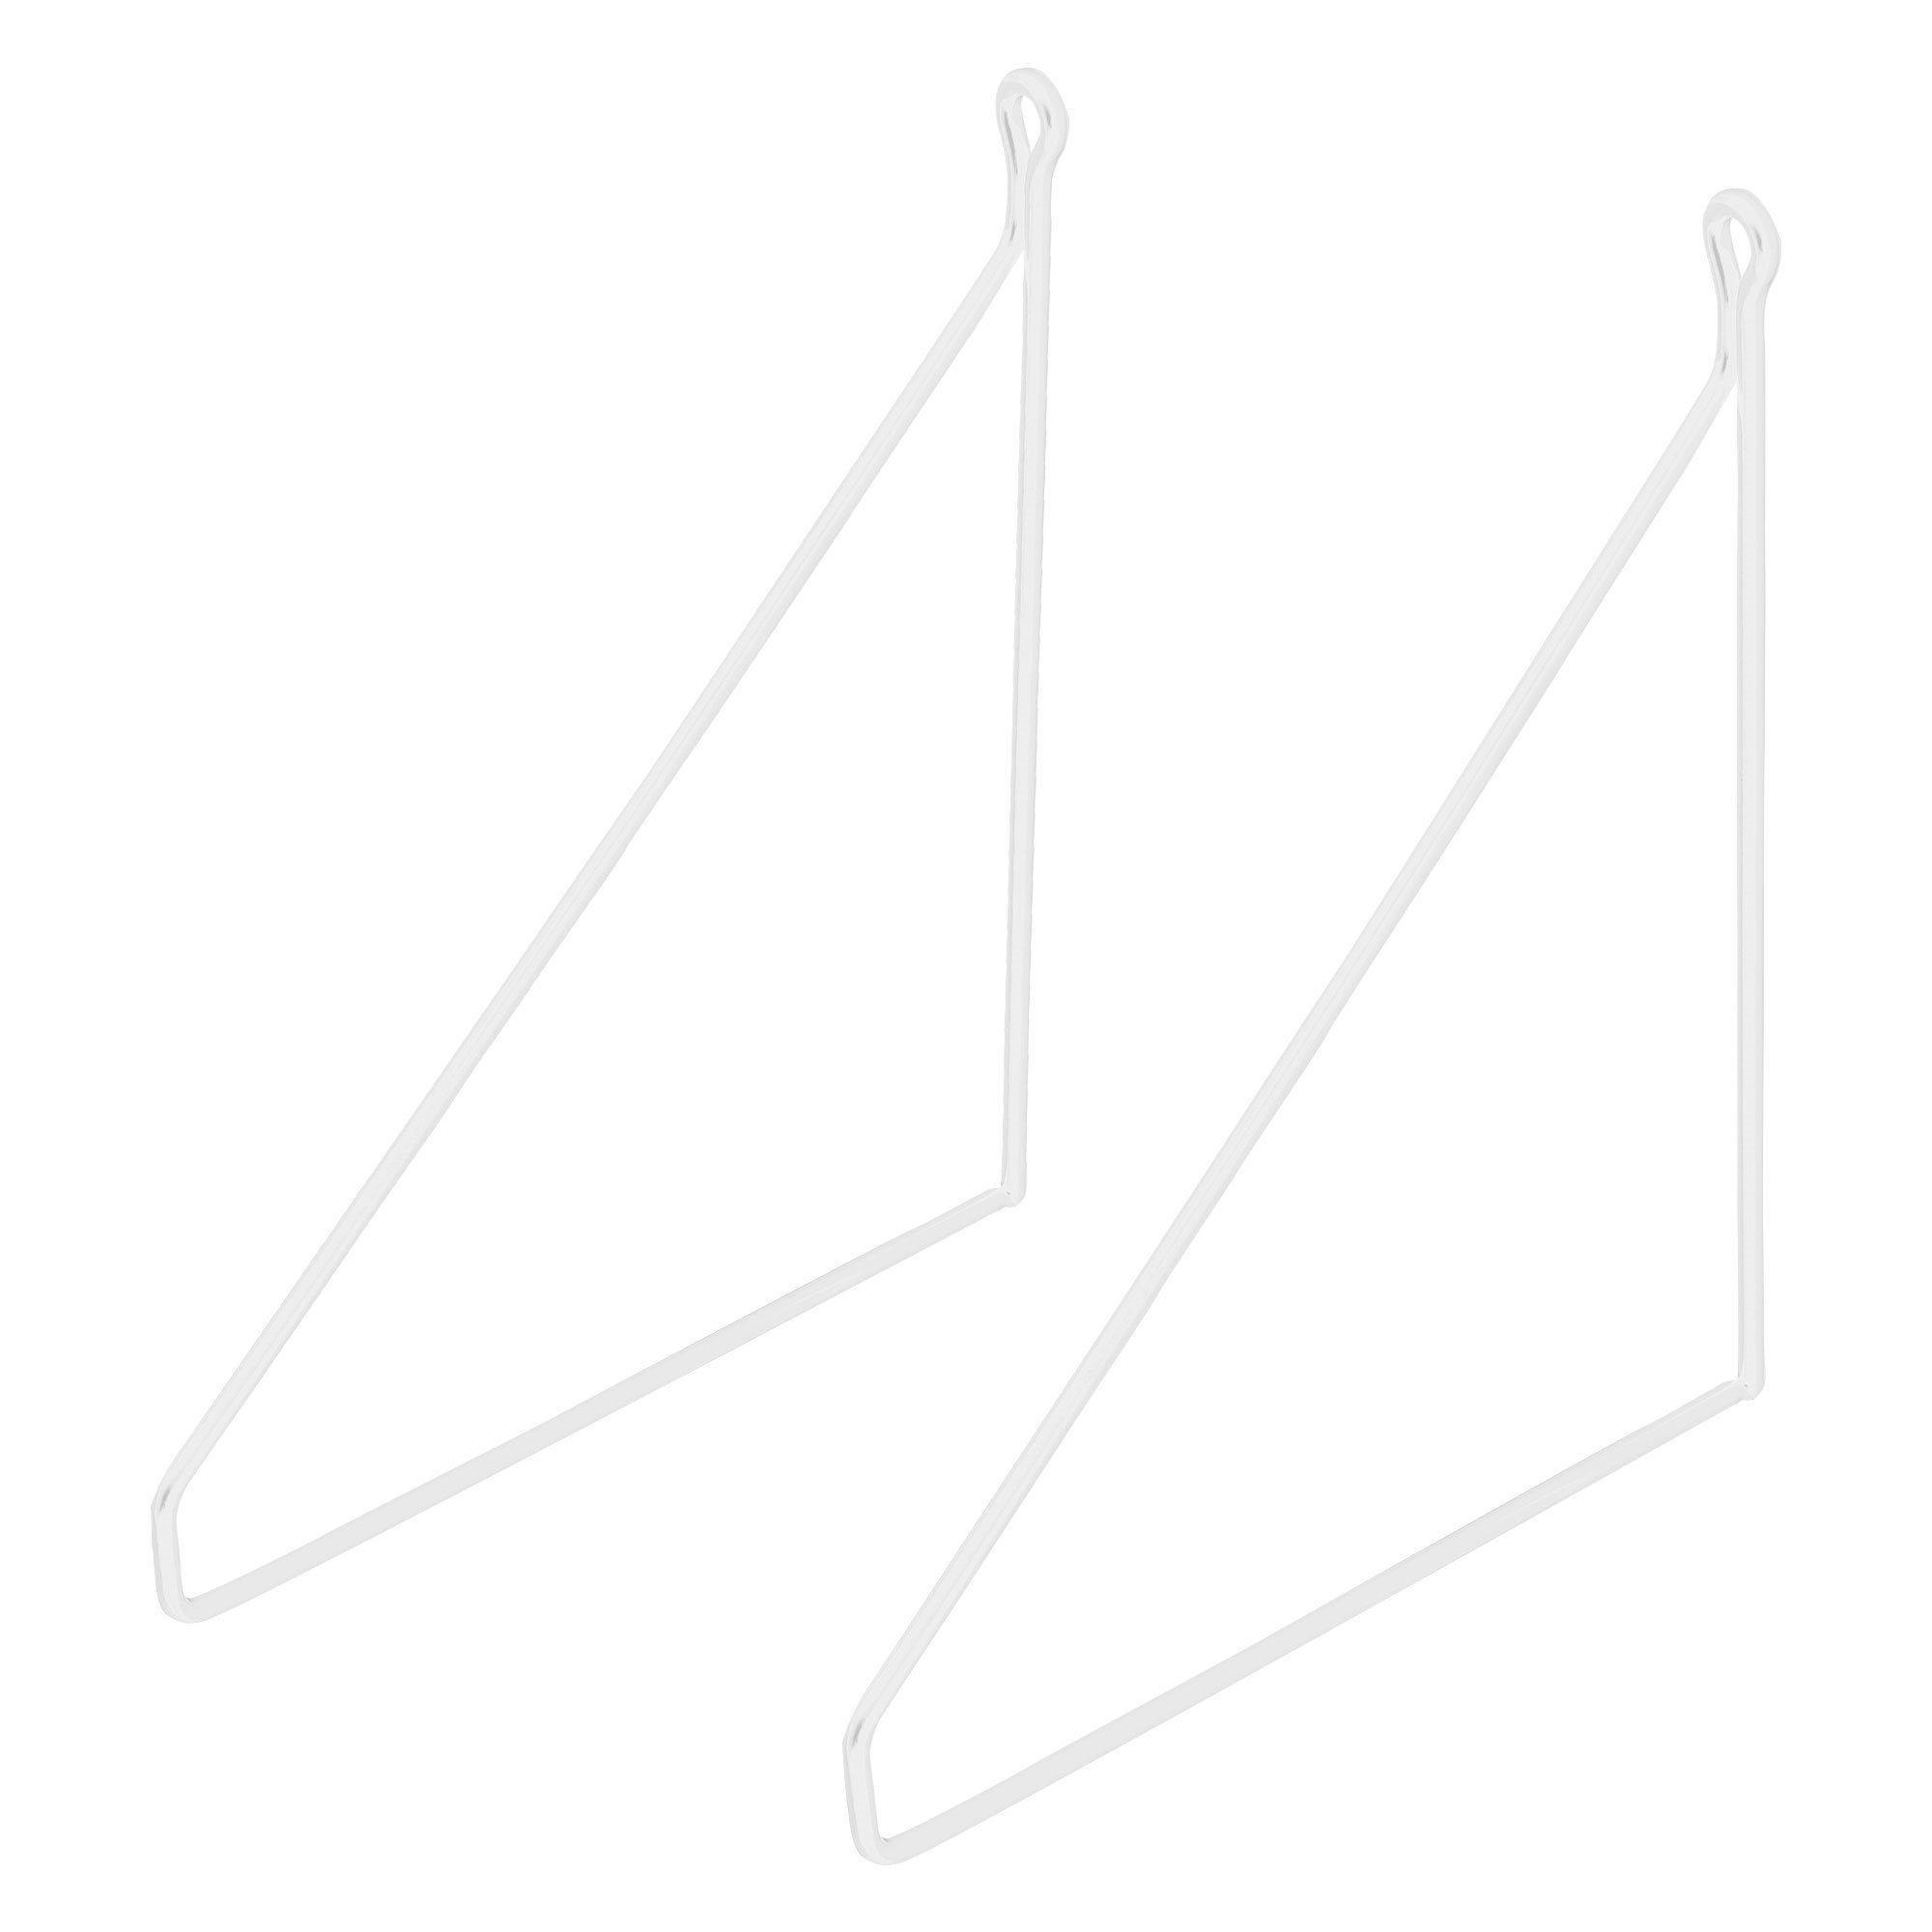 ML-DESIGN Regal Regalhalterung Schwebe Regalwinkel Draht Wandhalterung Regalträger, 2 Stück 200mm Weiß Metall Dreieckig Wandmontage